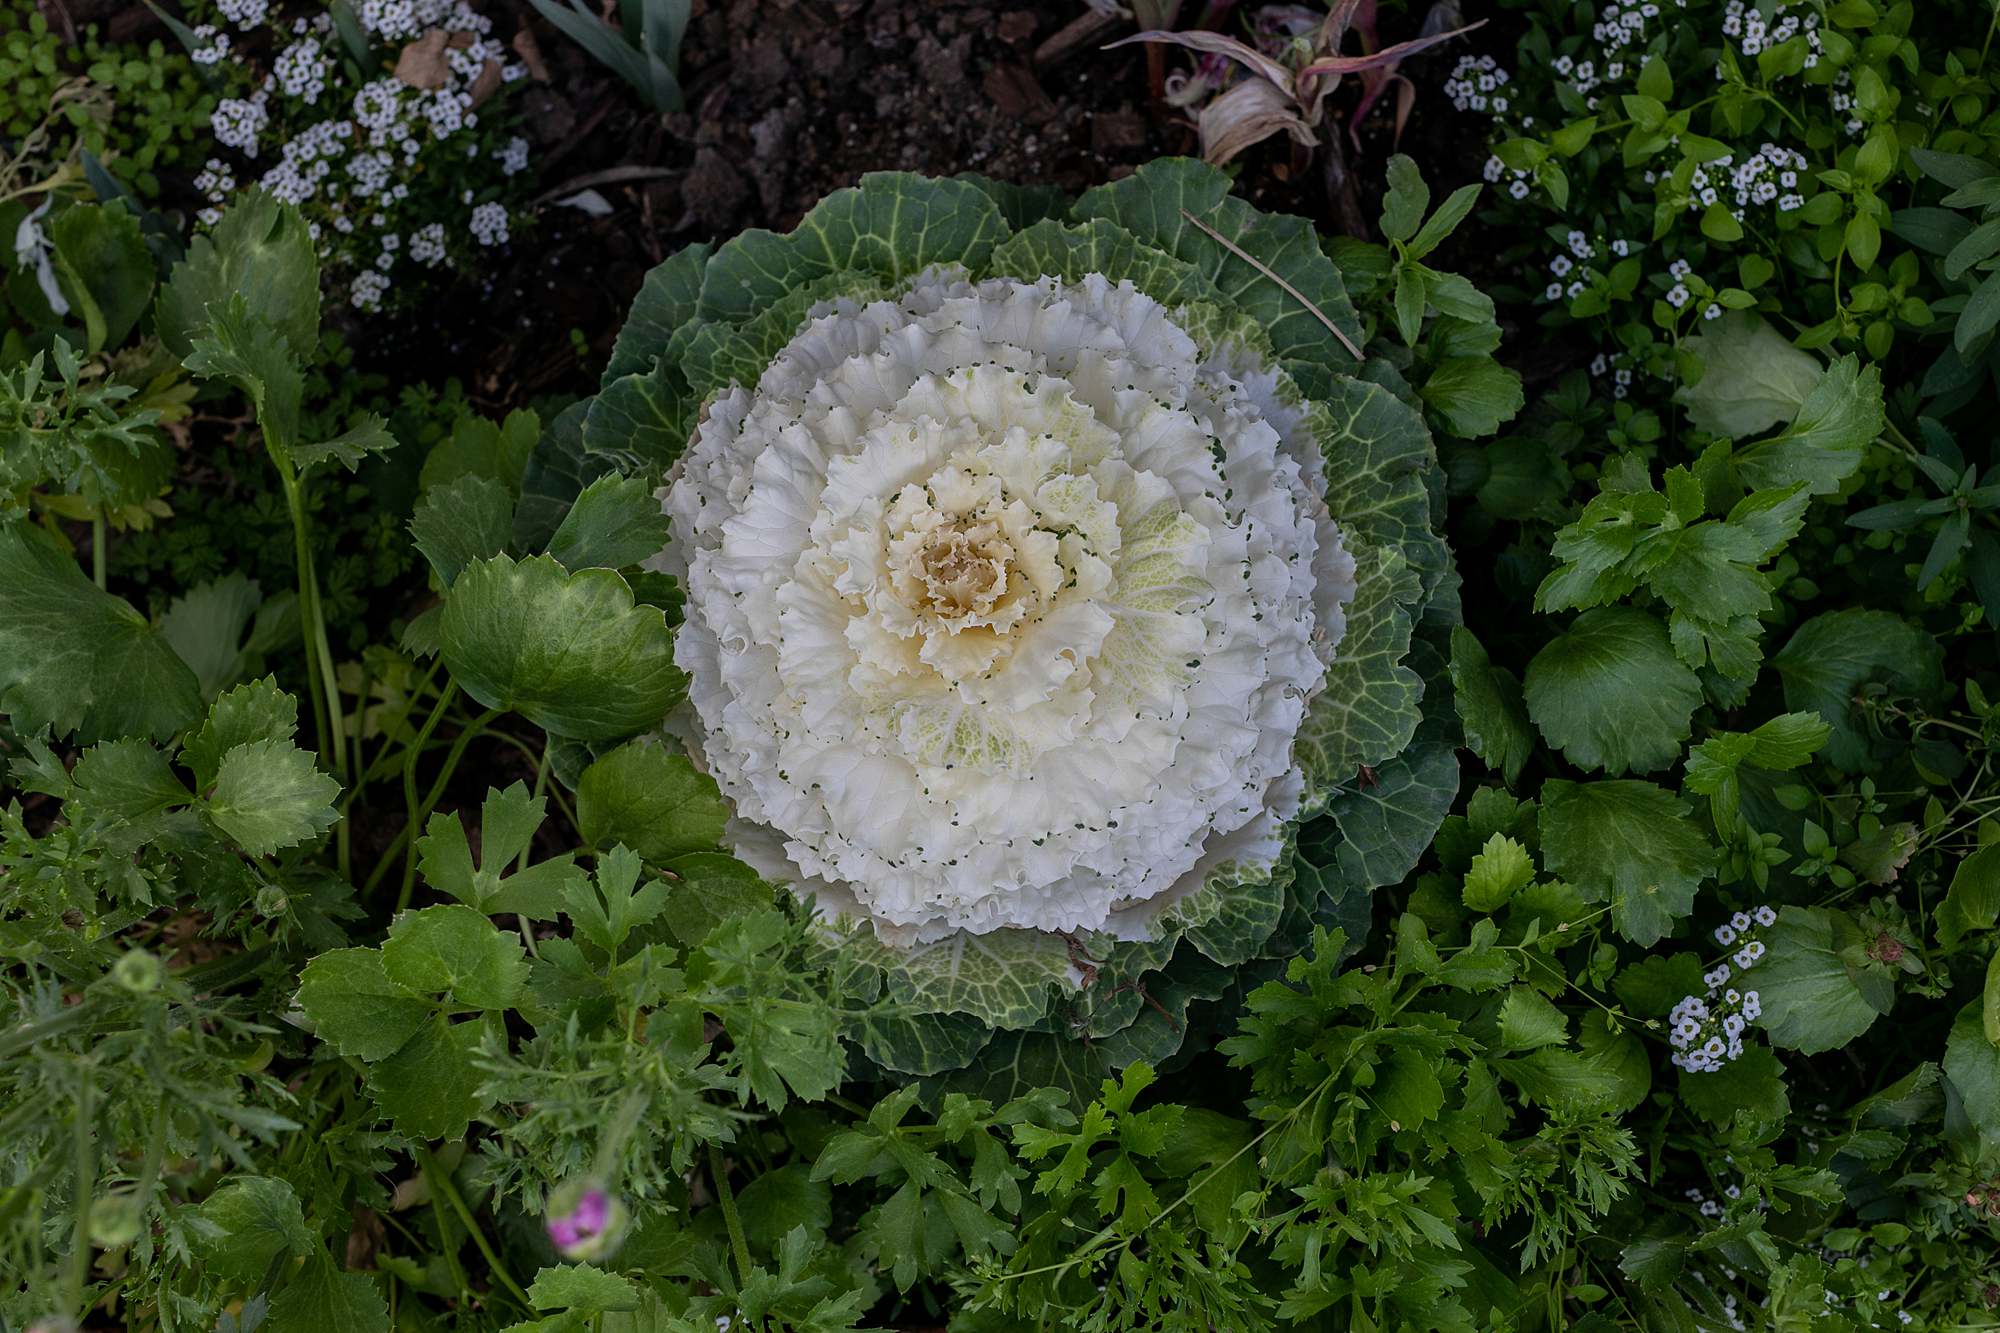 ornamental cabbage not to be eaten - garden blog diana elizabeth phoenix arizona